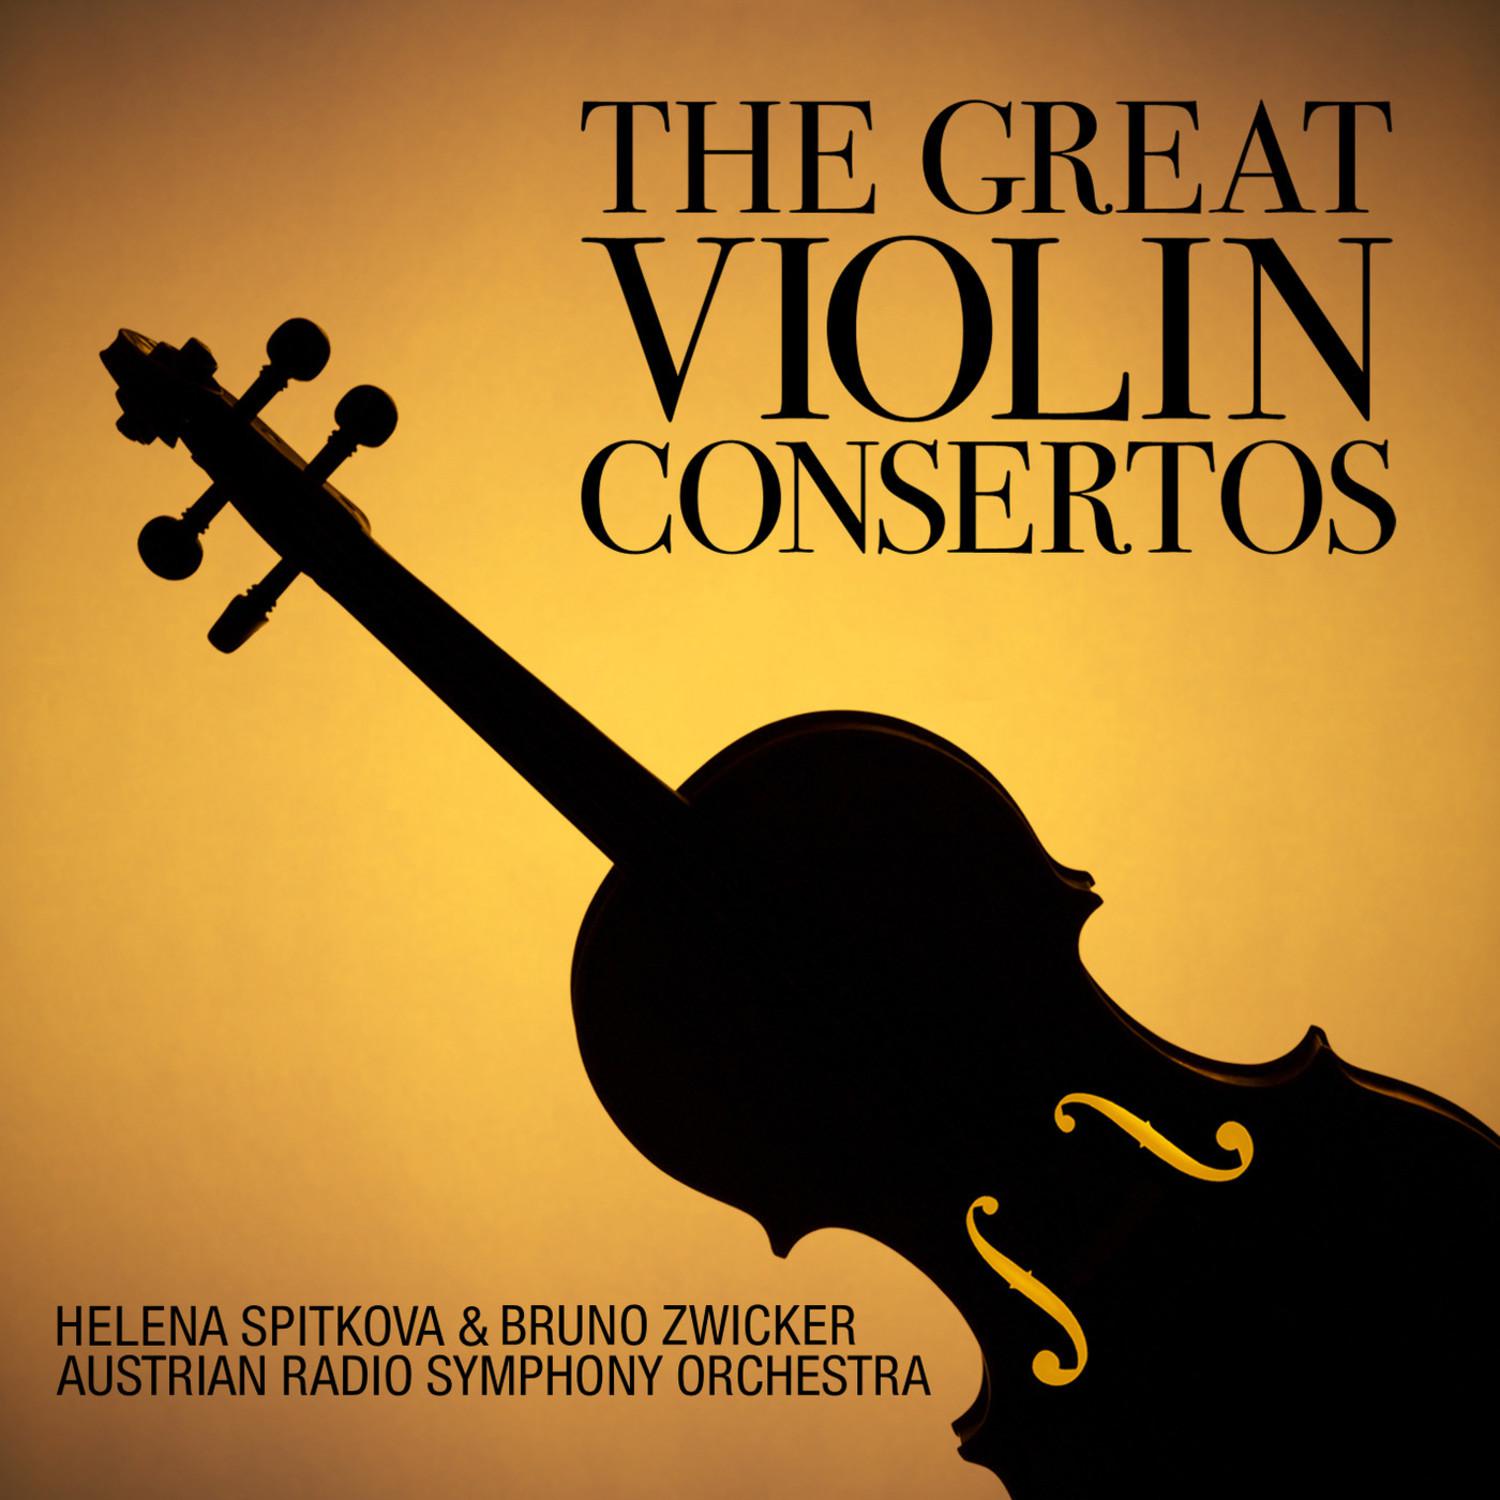 Concerto in D Minor for Violin and Orchestra, Op. 47: III. Allegro ma non tanto